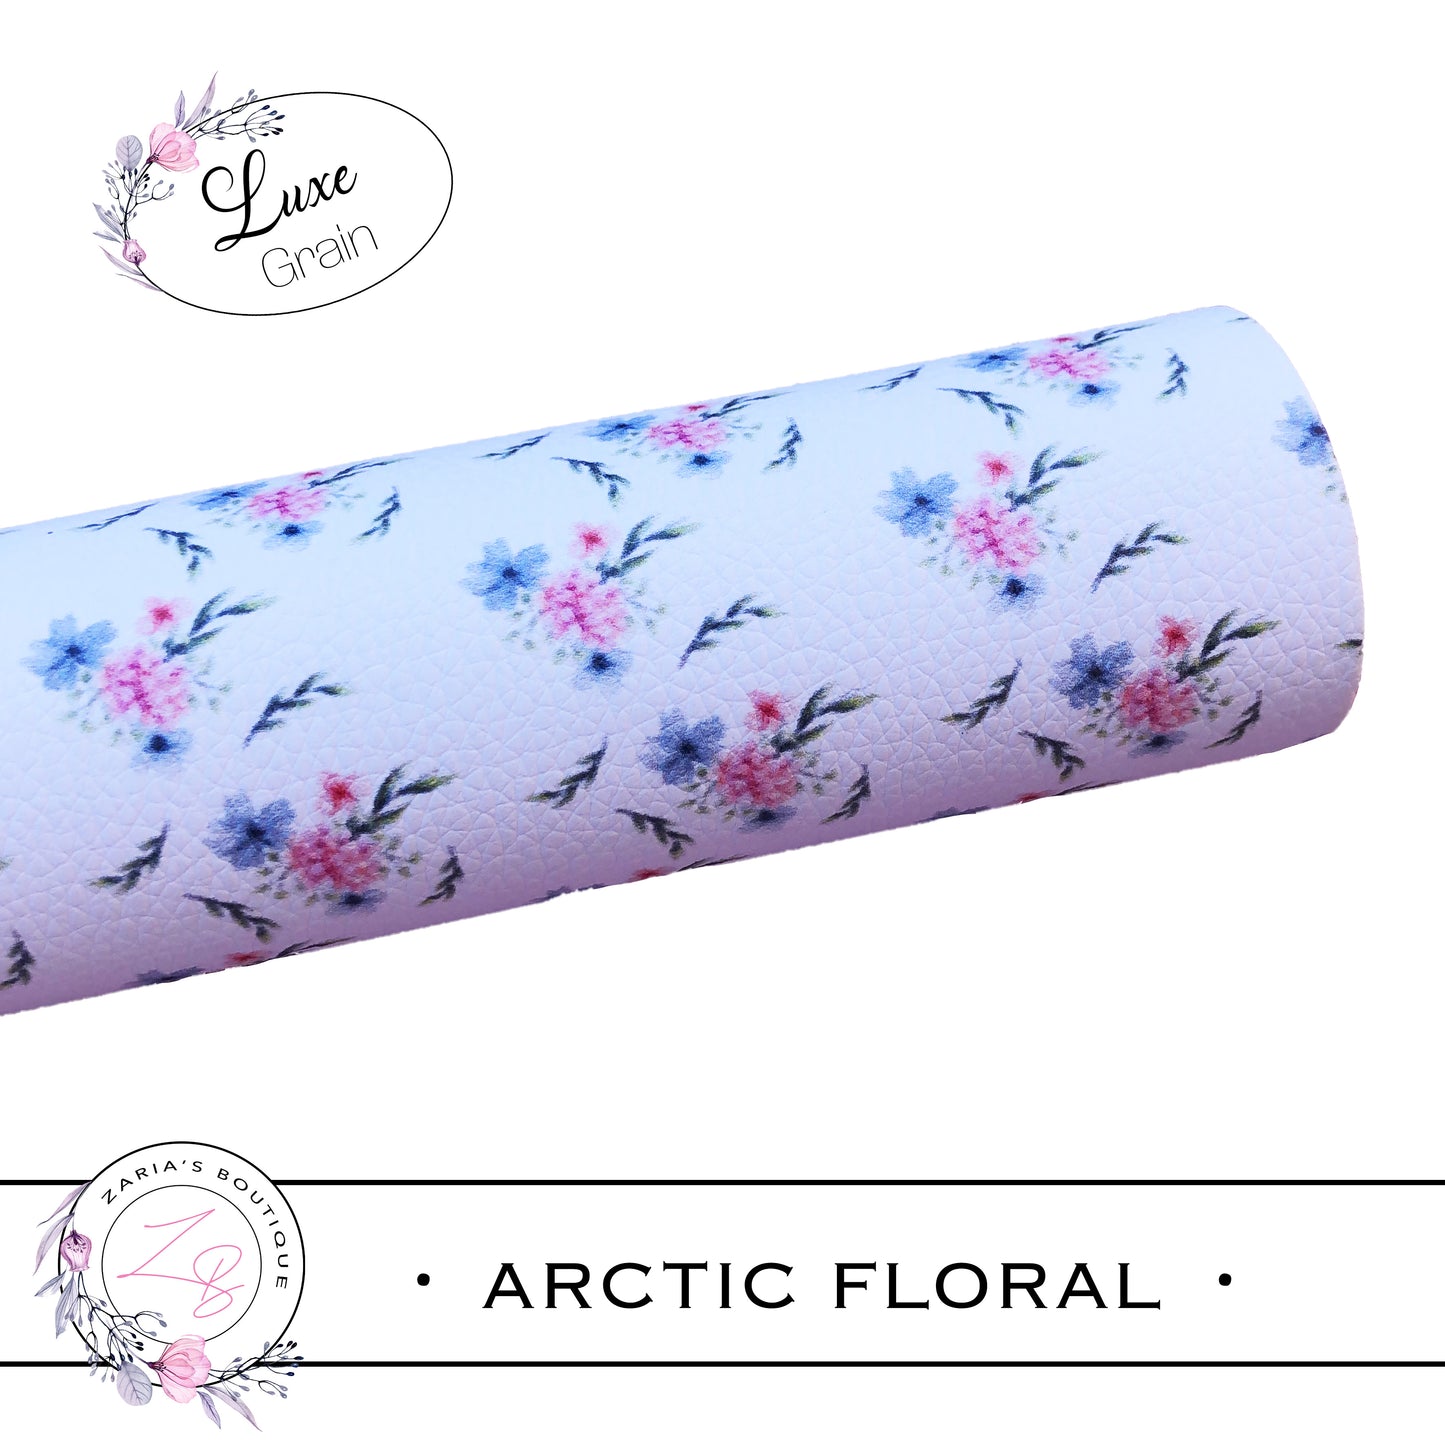 ⋅ Arctic Floral ⋅ Custom Premium Grain Vegan Faux Leather